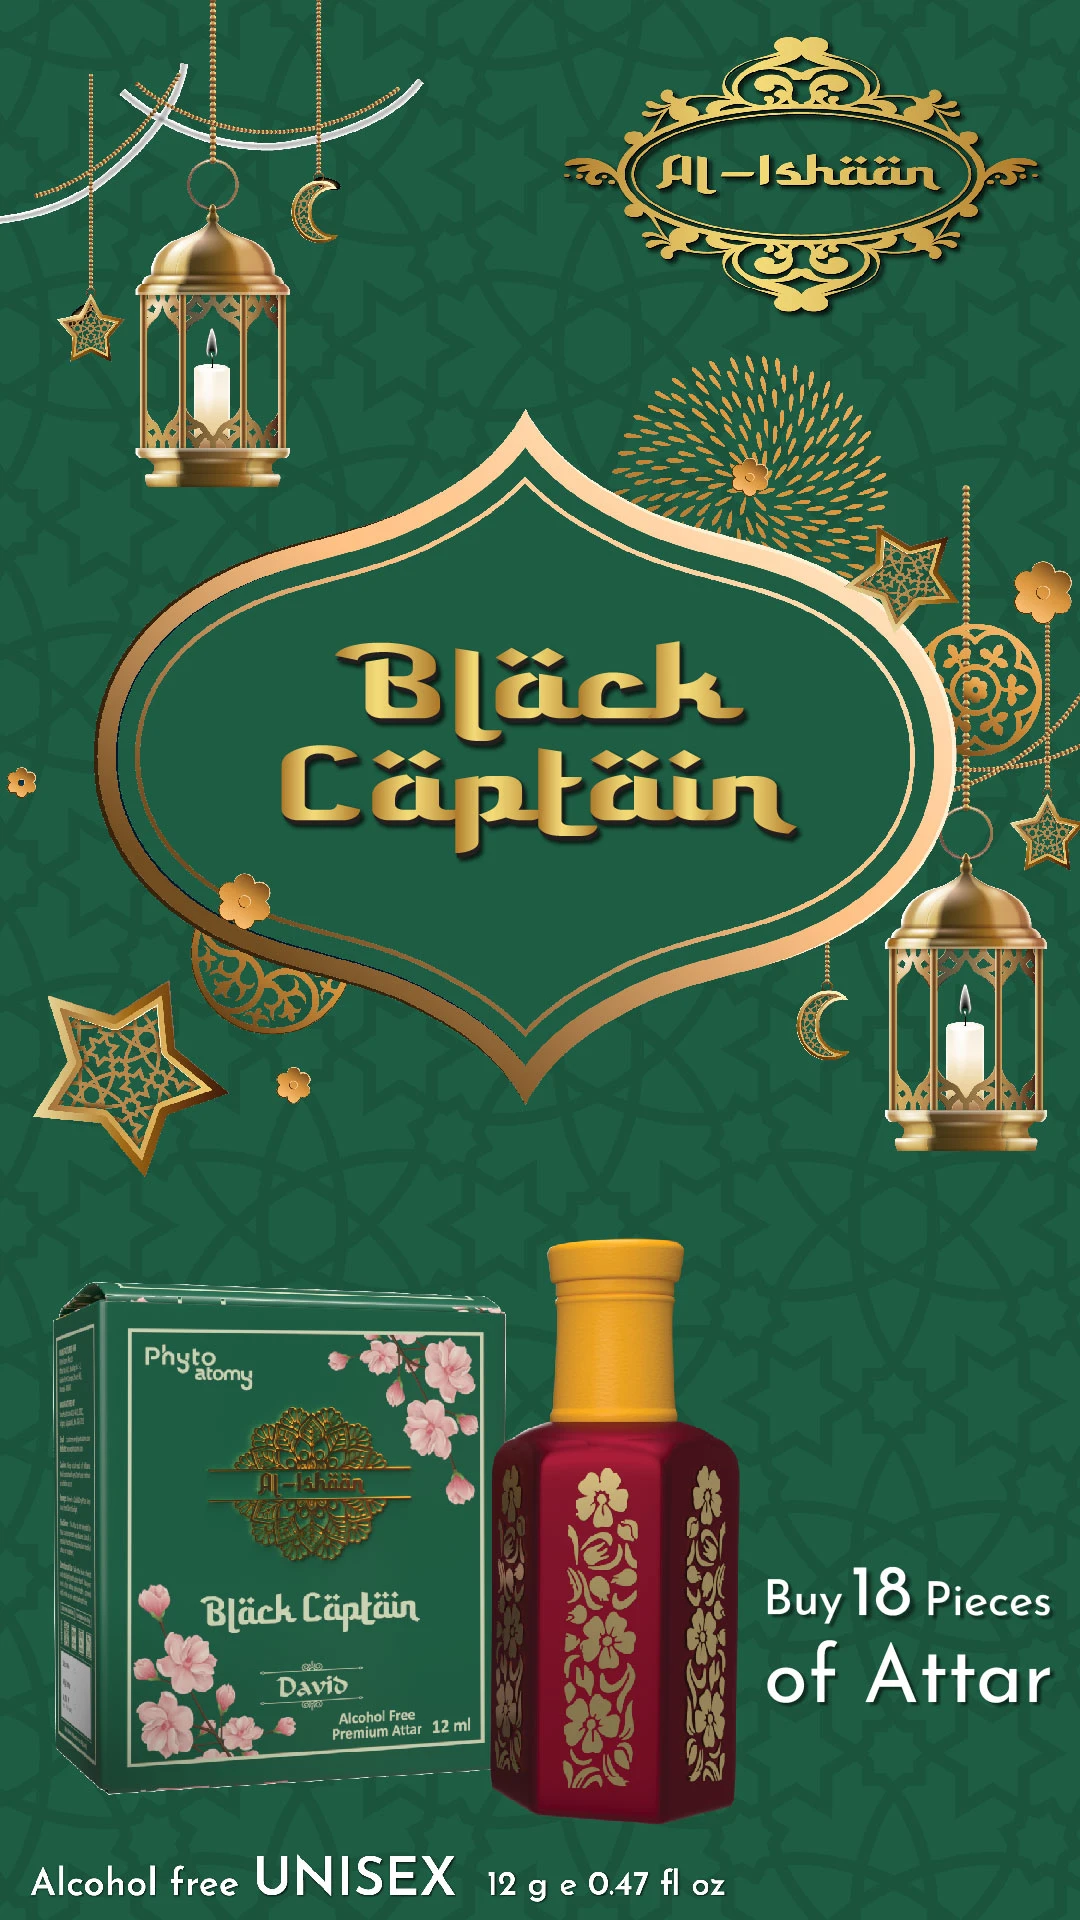 RBV B2B Al Ishan Black Captain Attar (12ml)-18 Pcs.